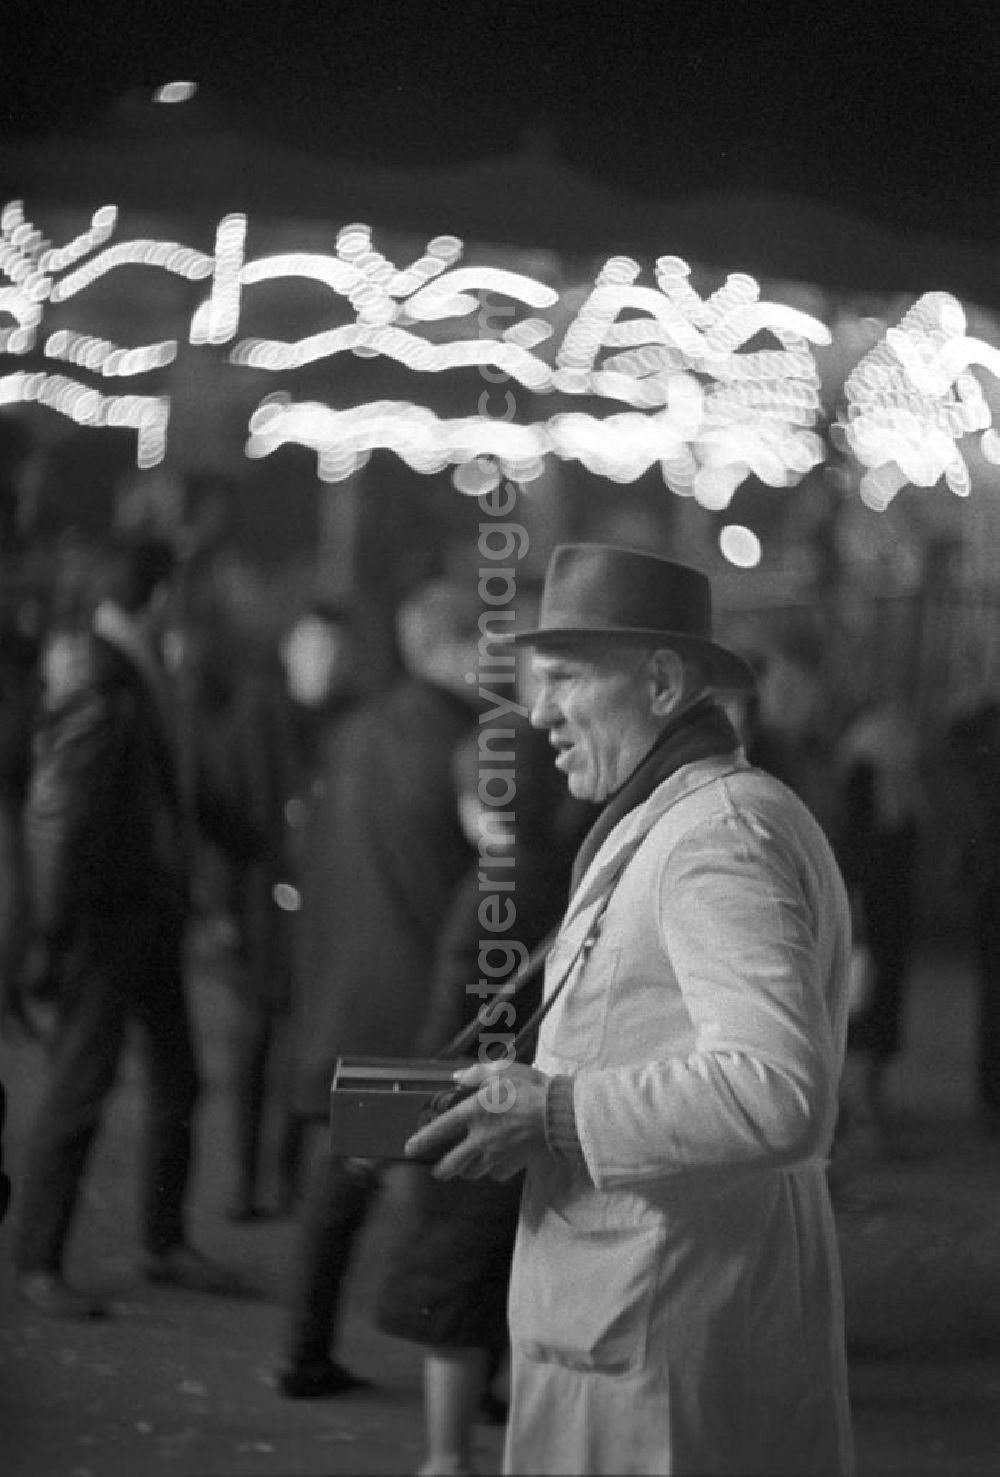 GDR picture archive: Leipzig - Ein Losverkäufer verkauft mit seinem Bauchladen Lose auf dem Leipziger Weihnachtsmarkt.